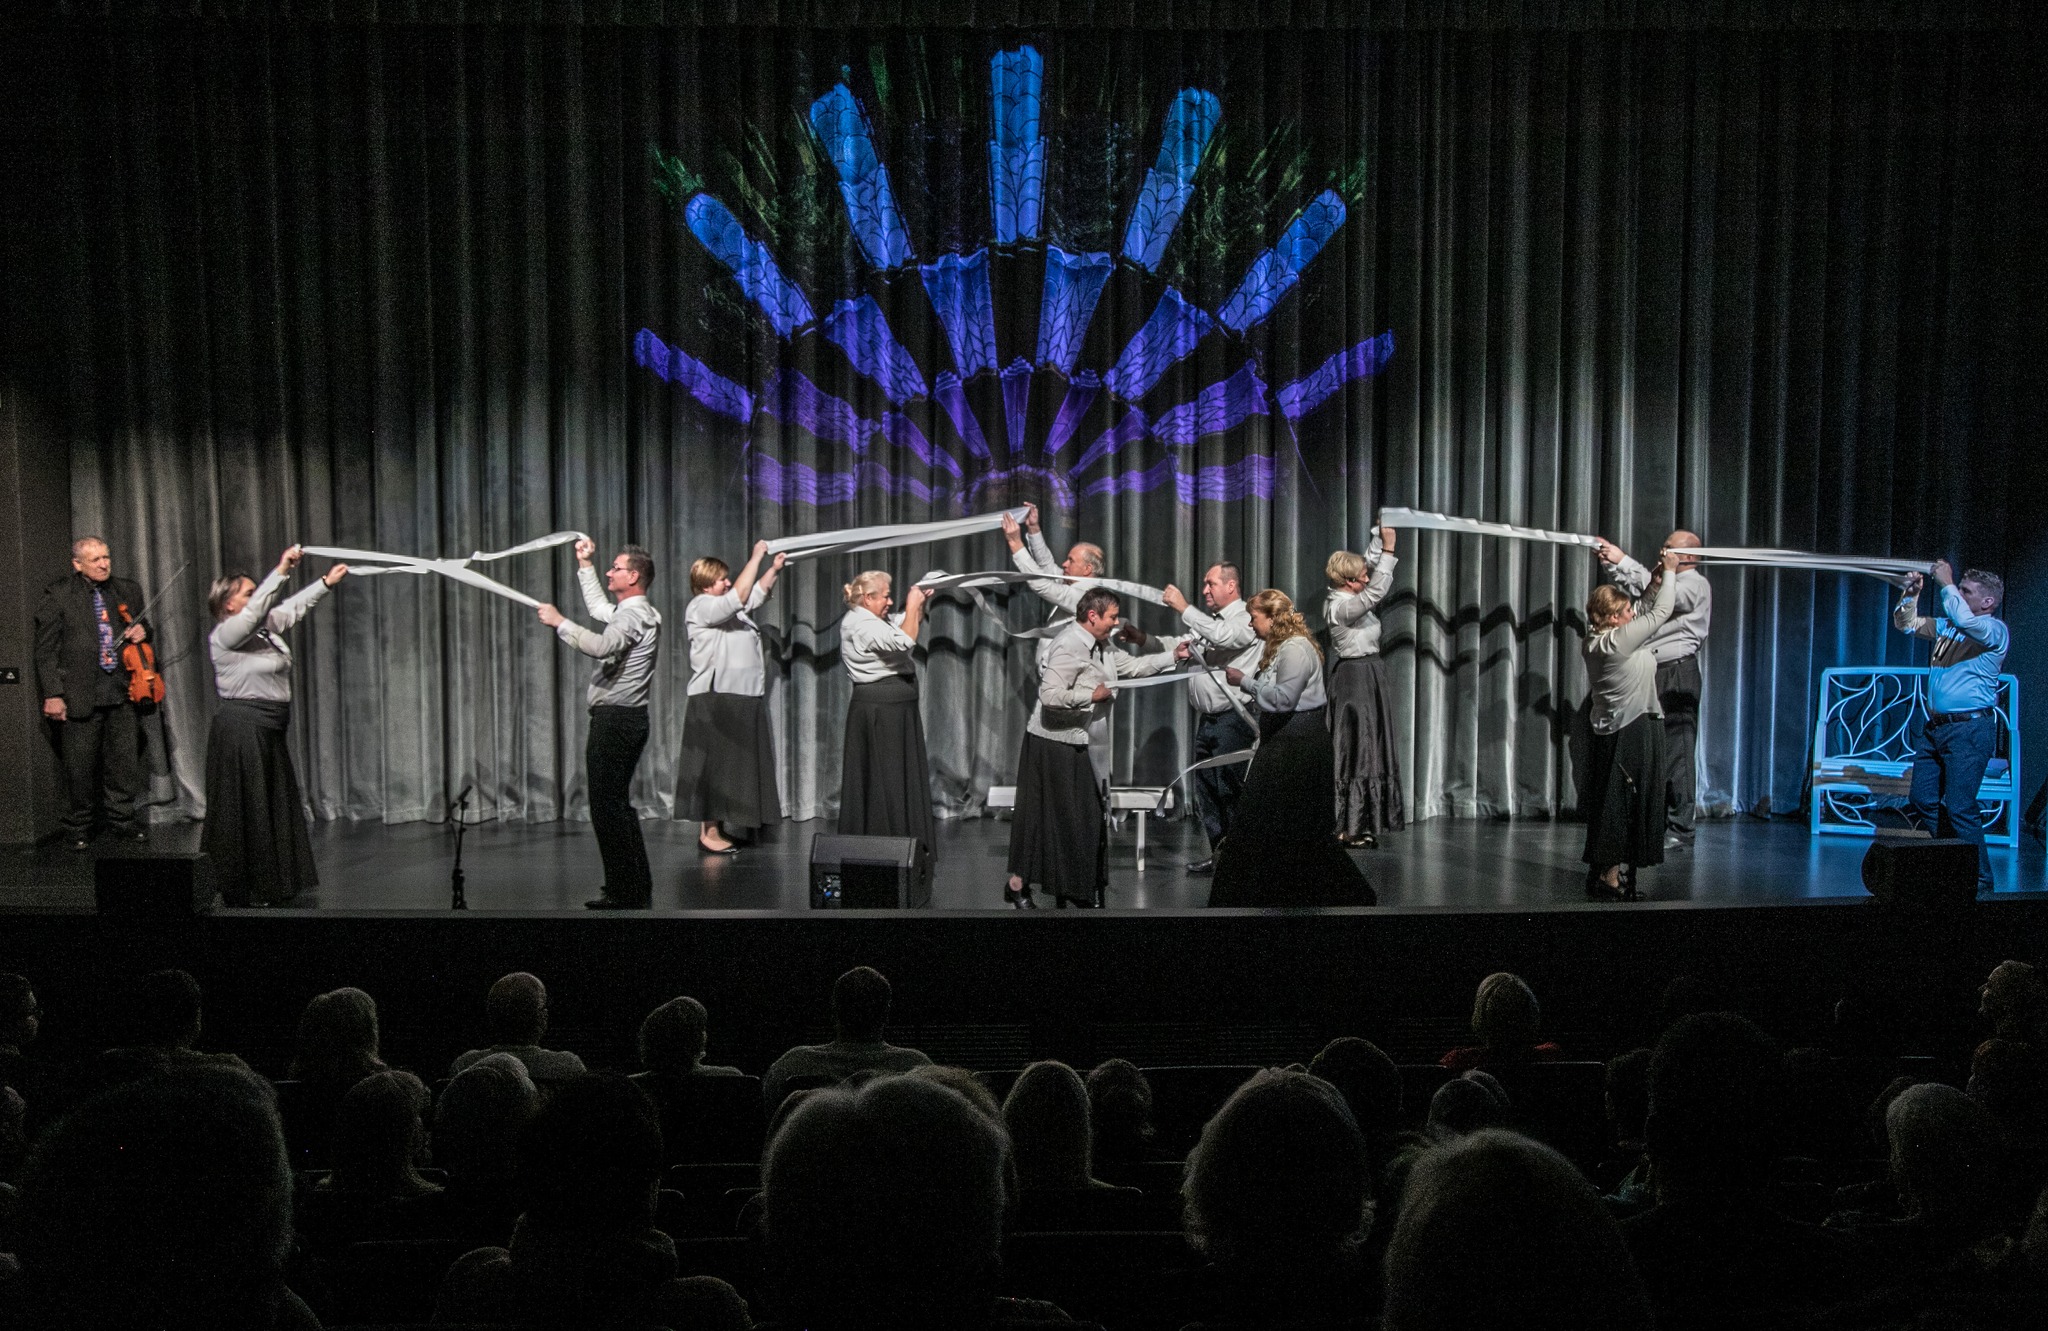 Į Jurbarko kultūros centro sceną grįžo tradicinis teatralizuotas muzikinis mėgėjų meno kolektyvų vadinimas